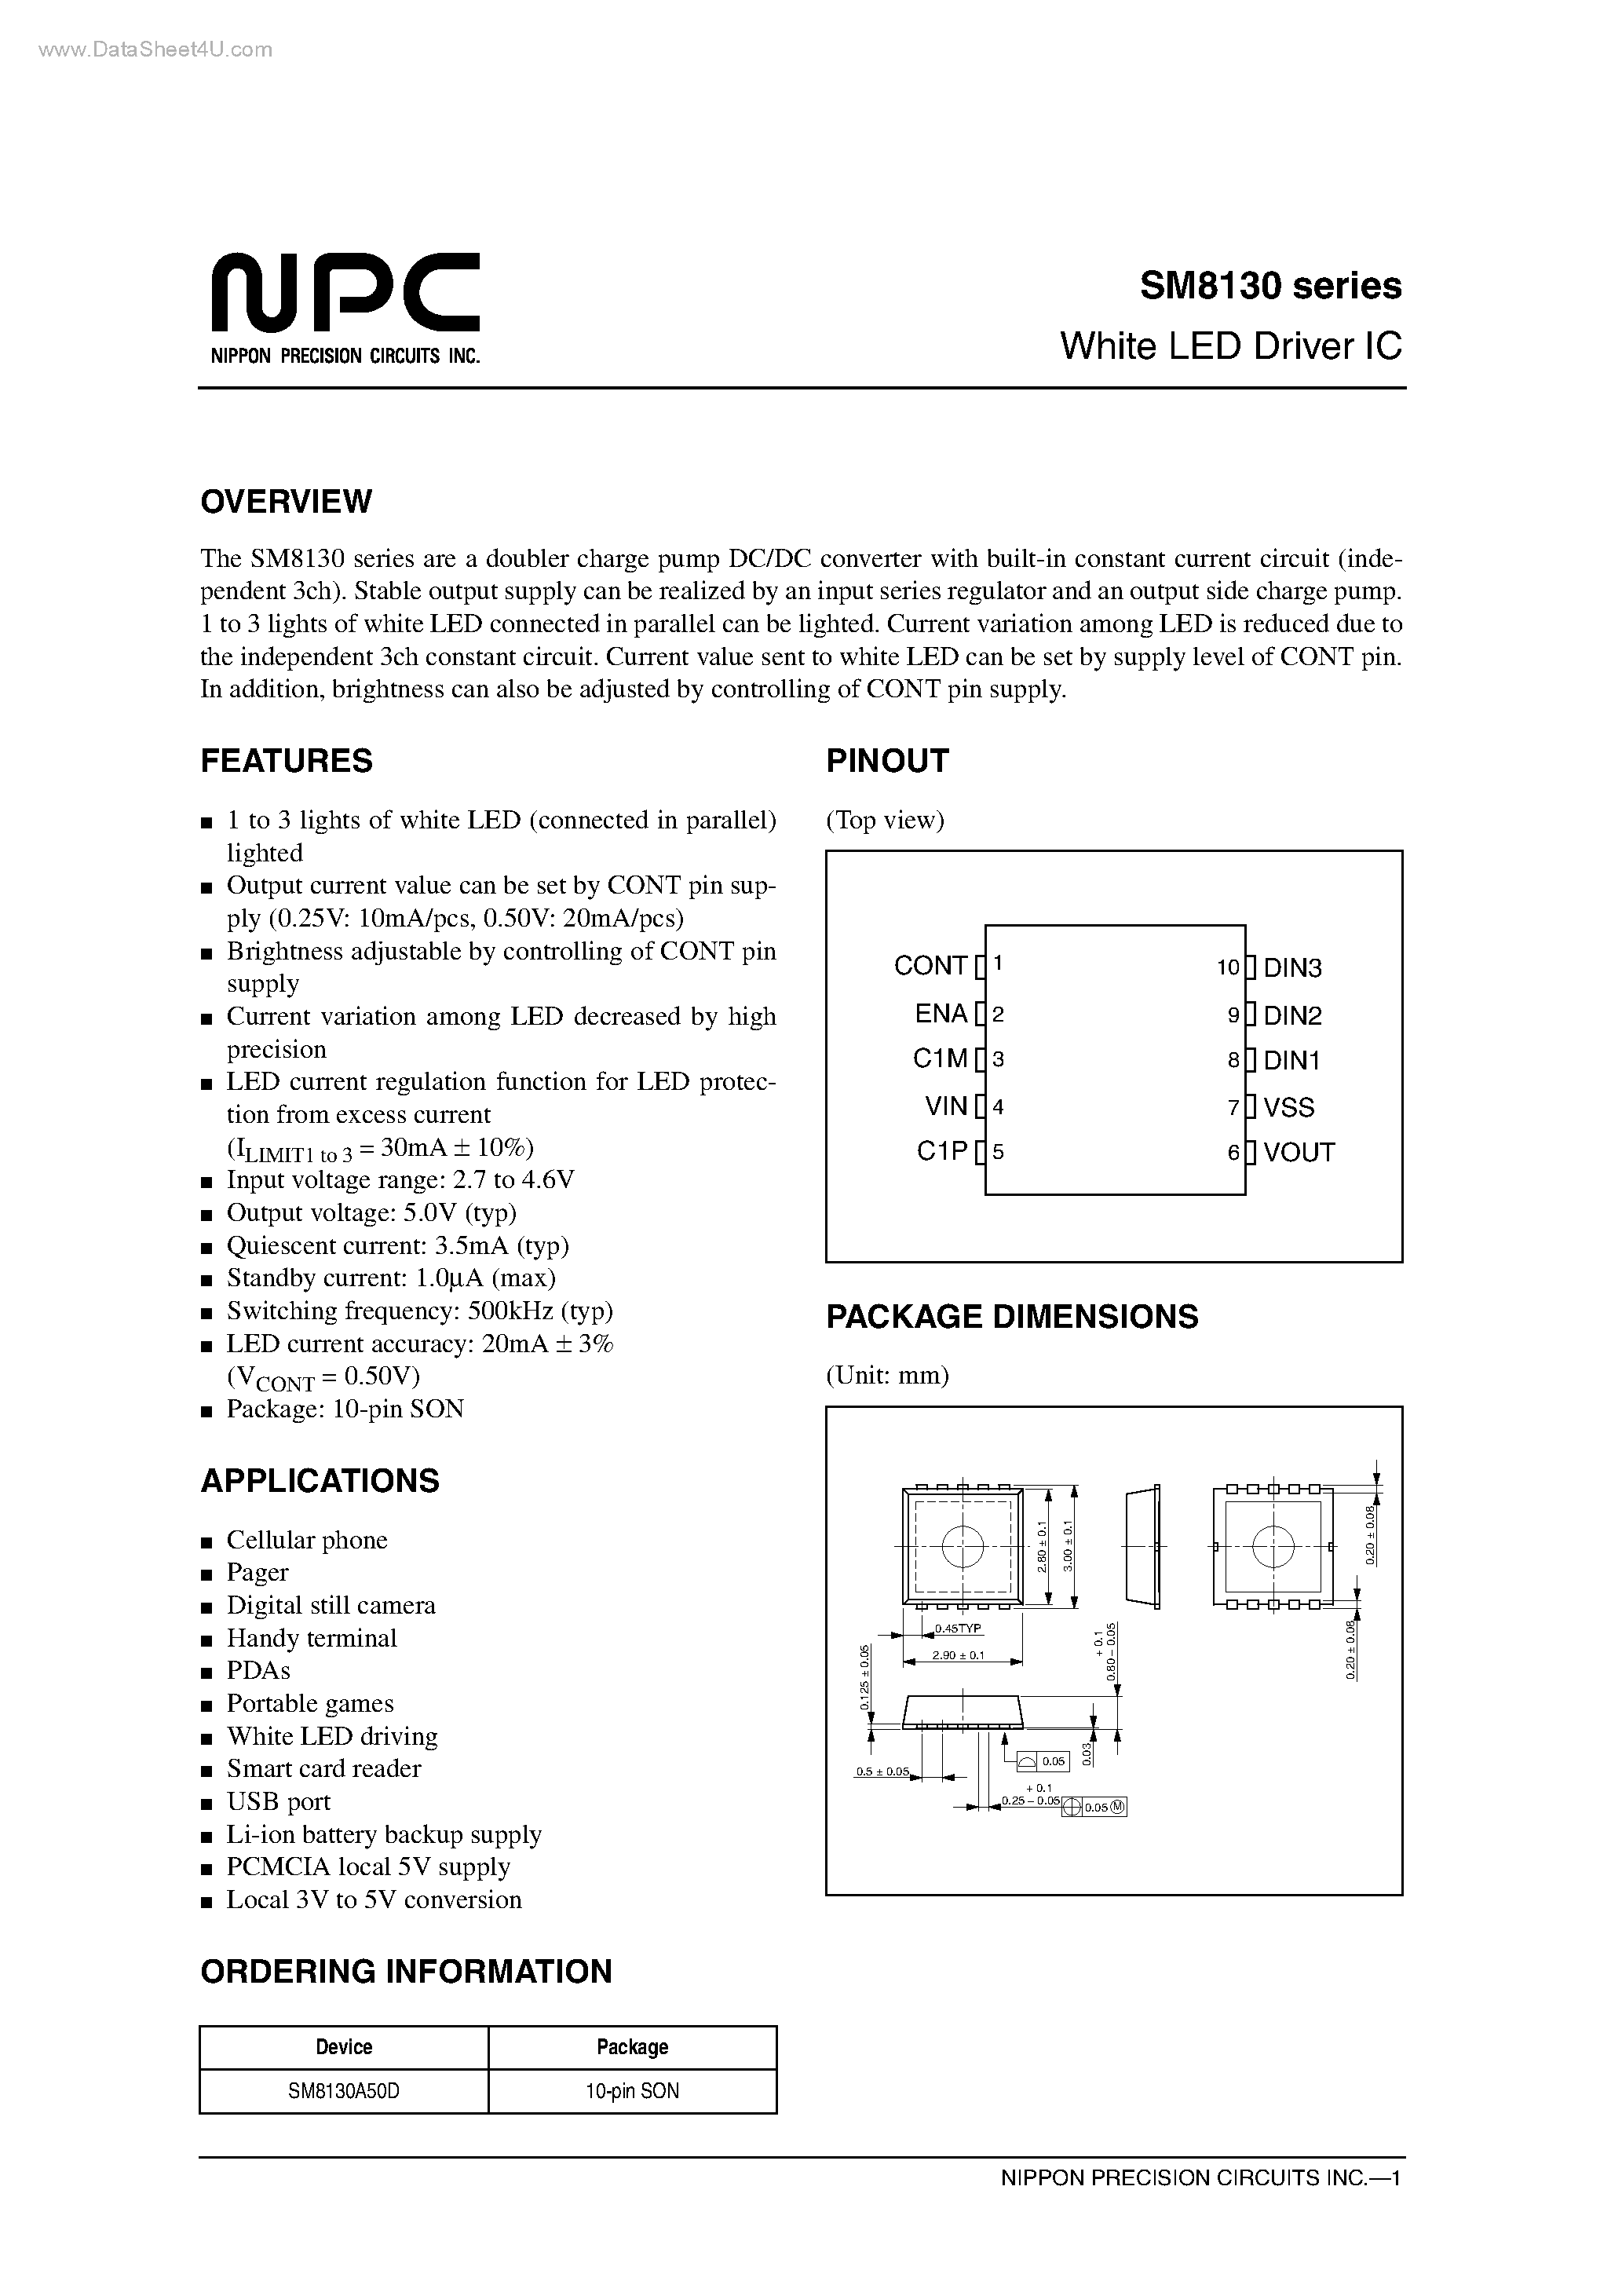 Datasheet SM8130 - White LED Driver IC page 1